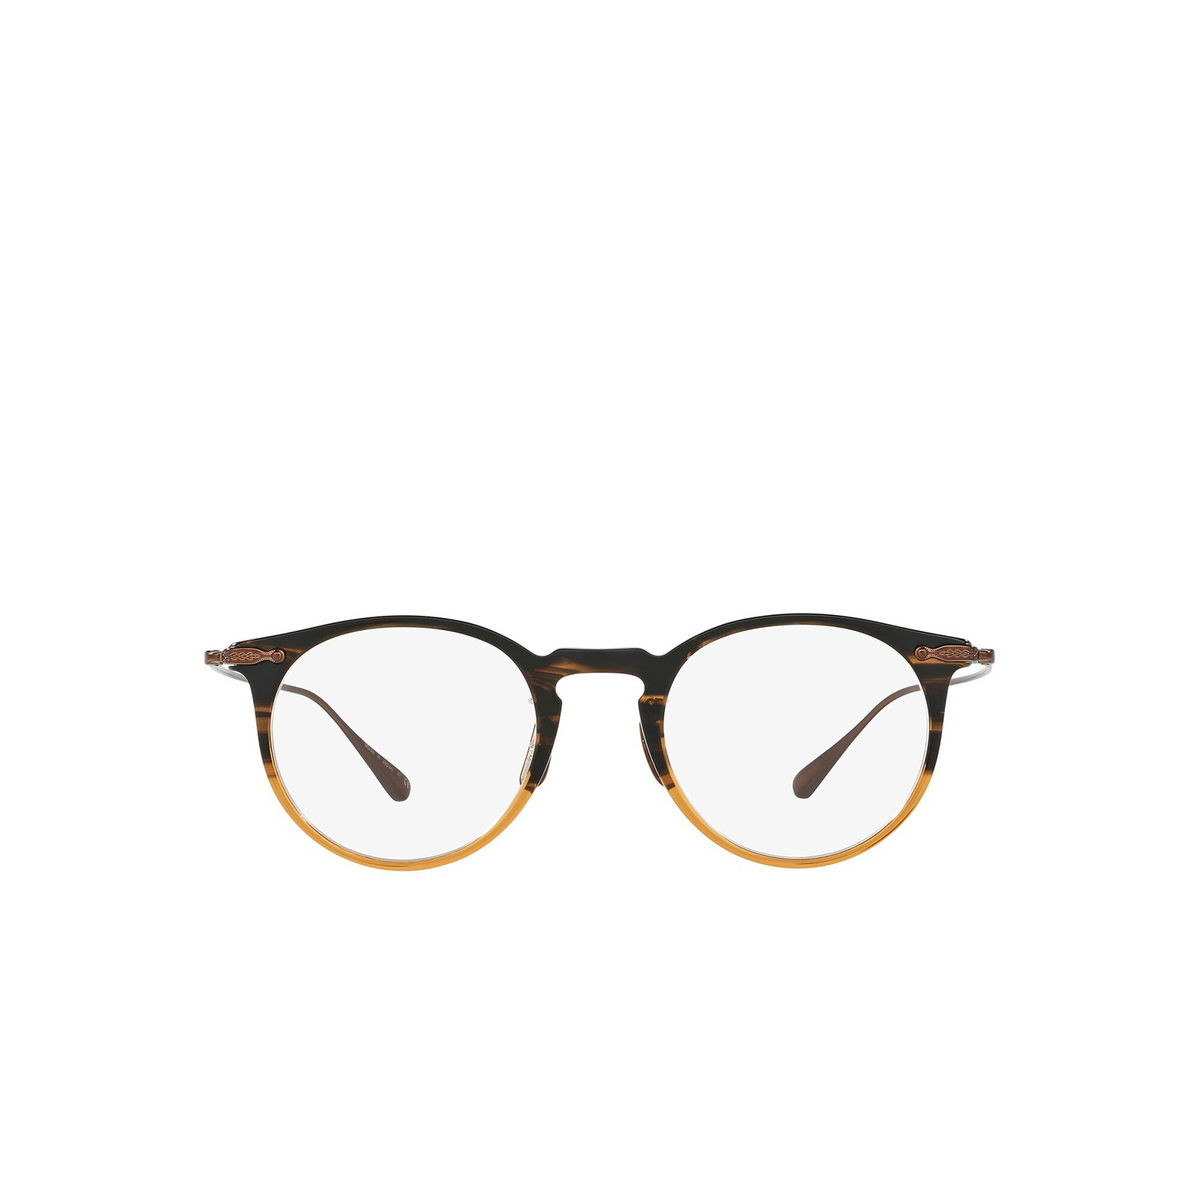 Oliver Peoples® Round Eyeglasses: Marret OV5343D color Honey Havana 1001 - front view.